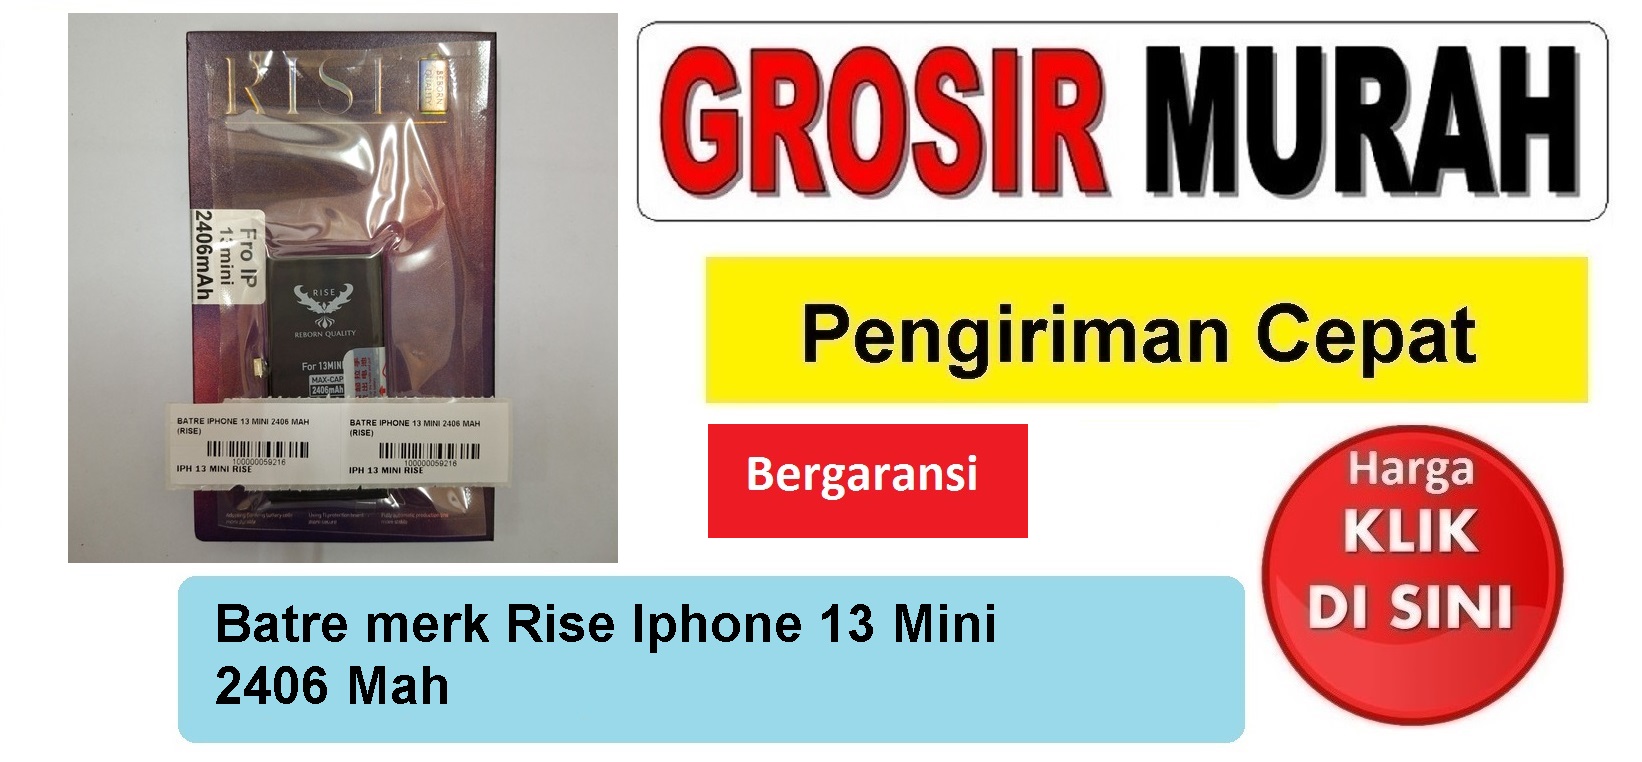 Batre merk Rise Iphone 13 Mini 2406 Mah Baterai Battery Bergaransi Batere